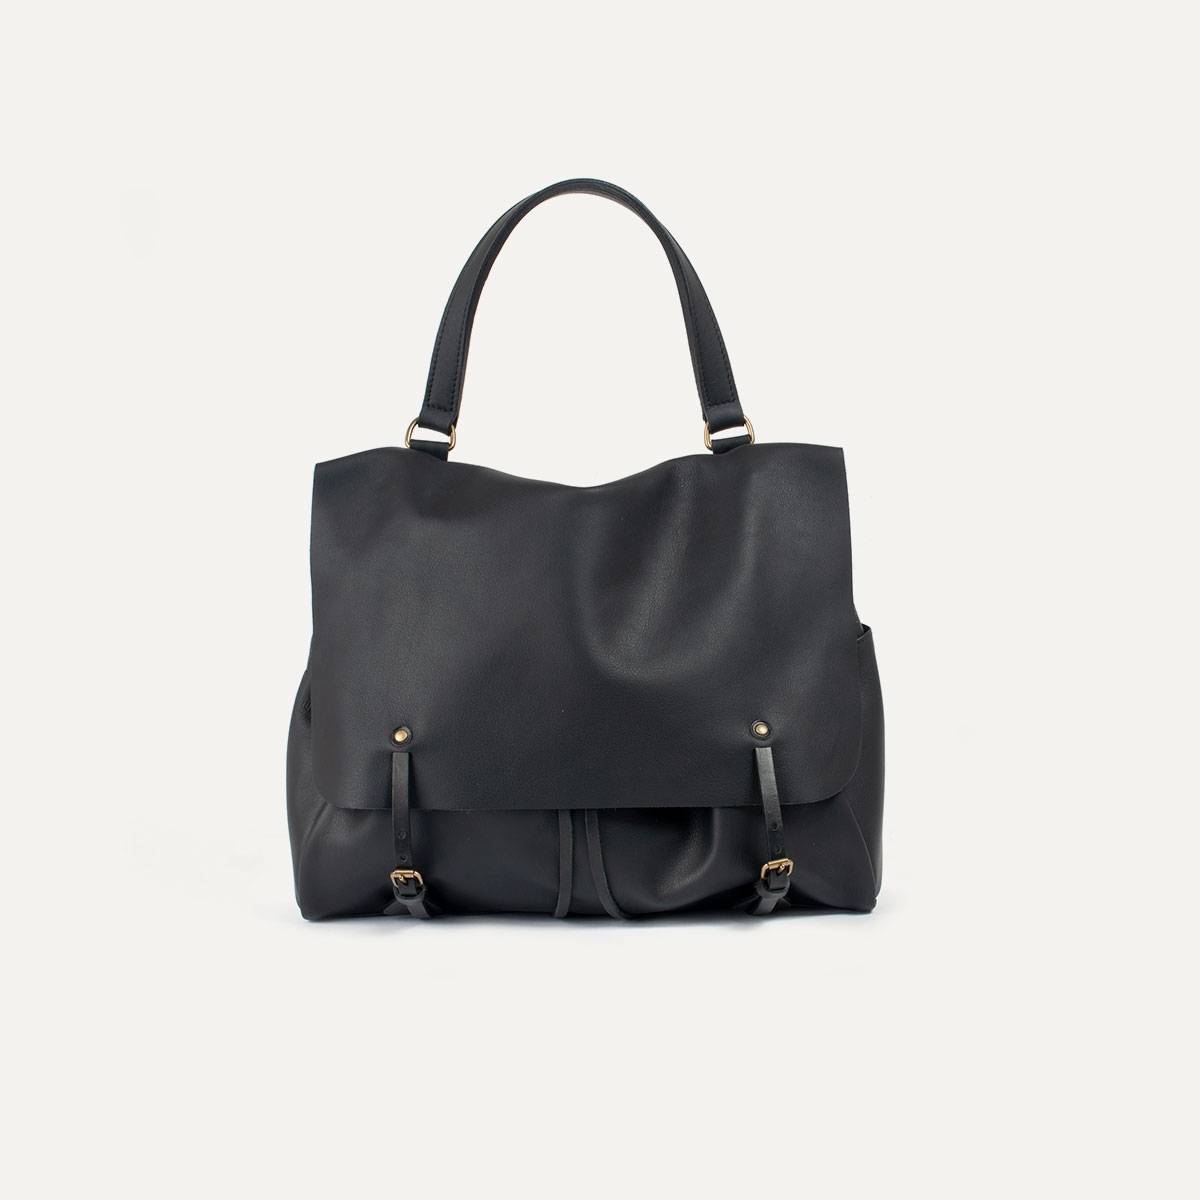 Colette leather satchel - Black (image n°1)